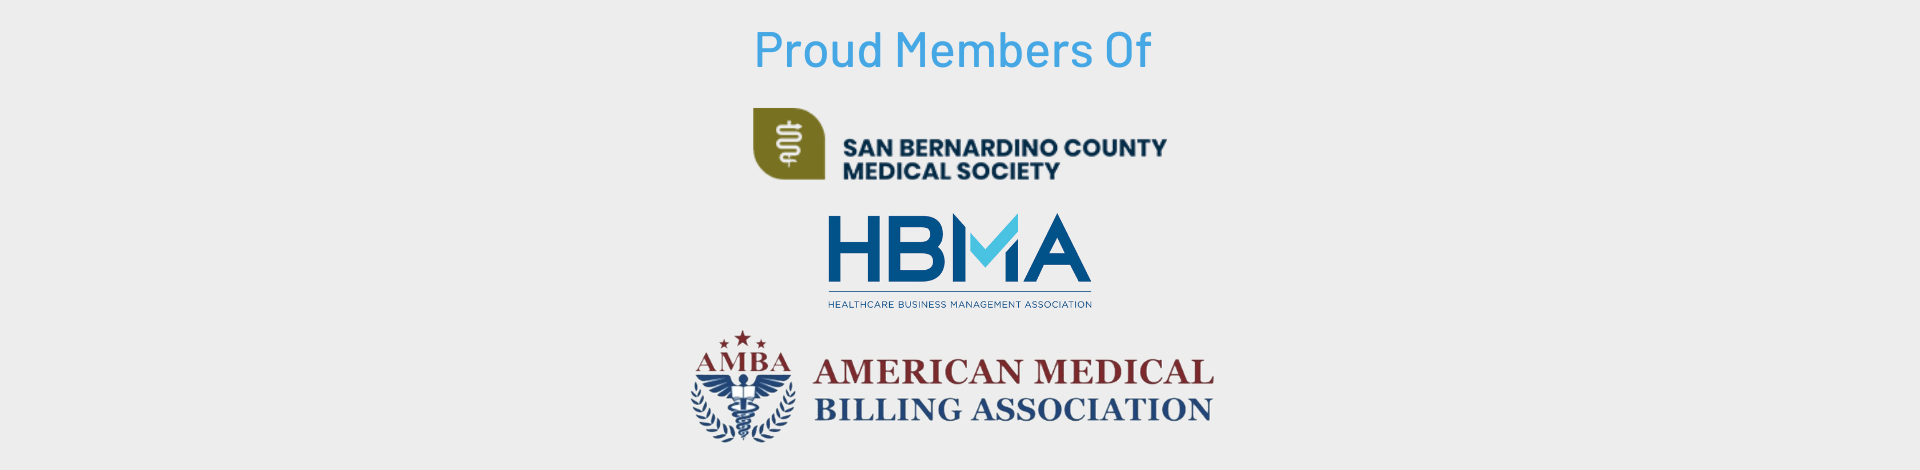 ca medical billing proud member logos